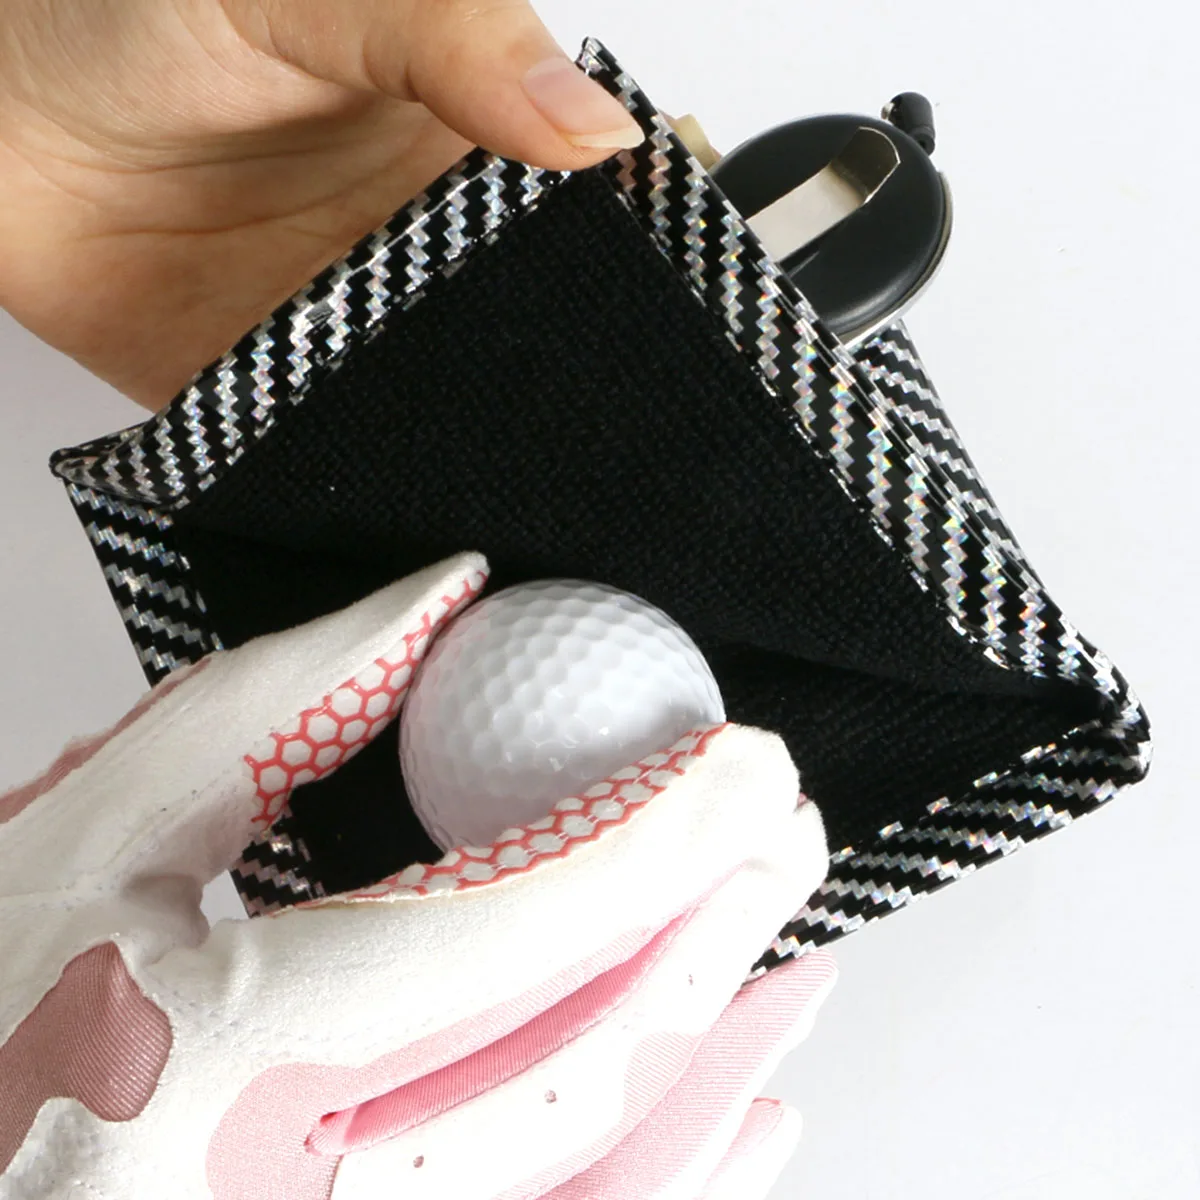 Wieża golfowa piłka golfowa klubowy środek czyszczący piłka golfowa ręcznik do czyszczenia kwadrat Mini z zwijany brelok klamrą PU wodoodporny